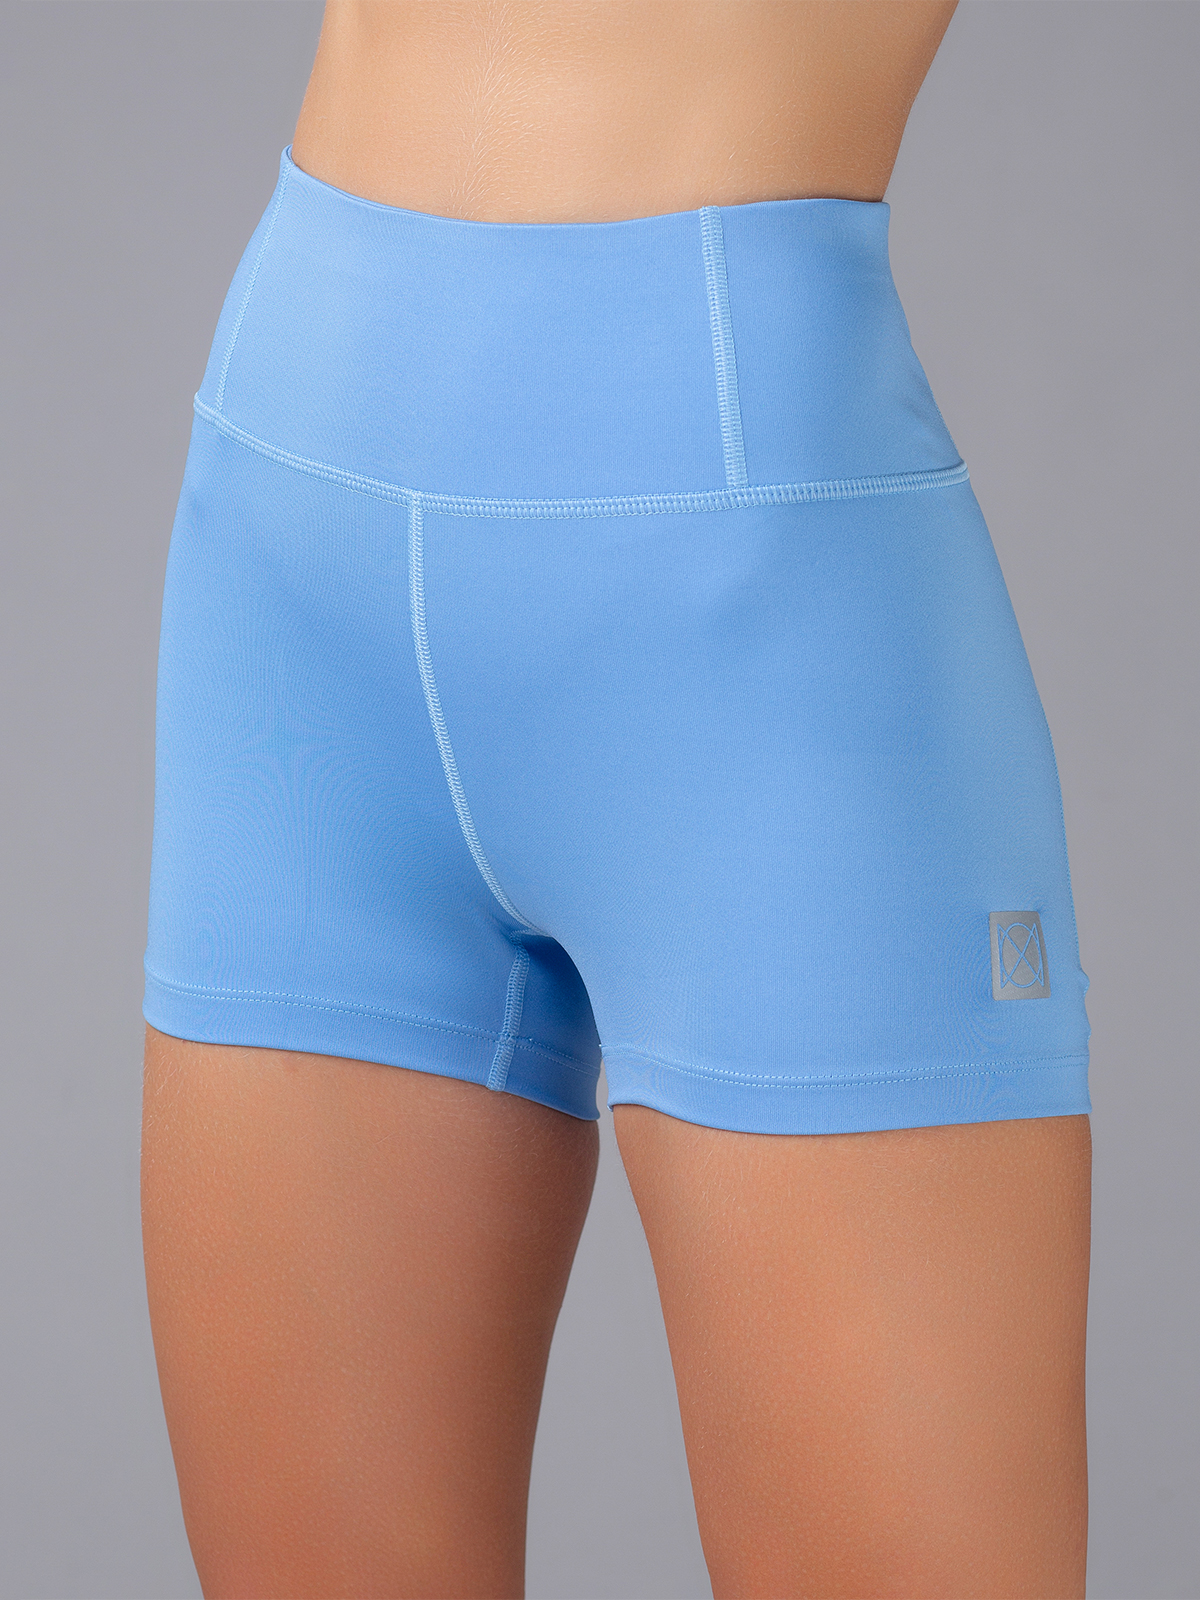 Cпортивные шорты женские Oxouno OXO 2041-653 голубые M